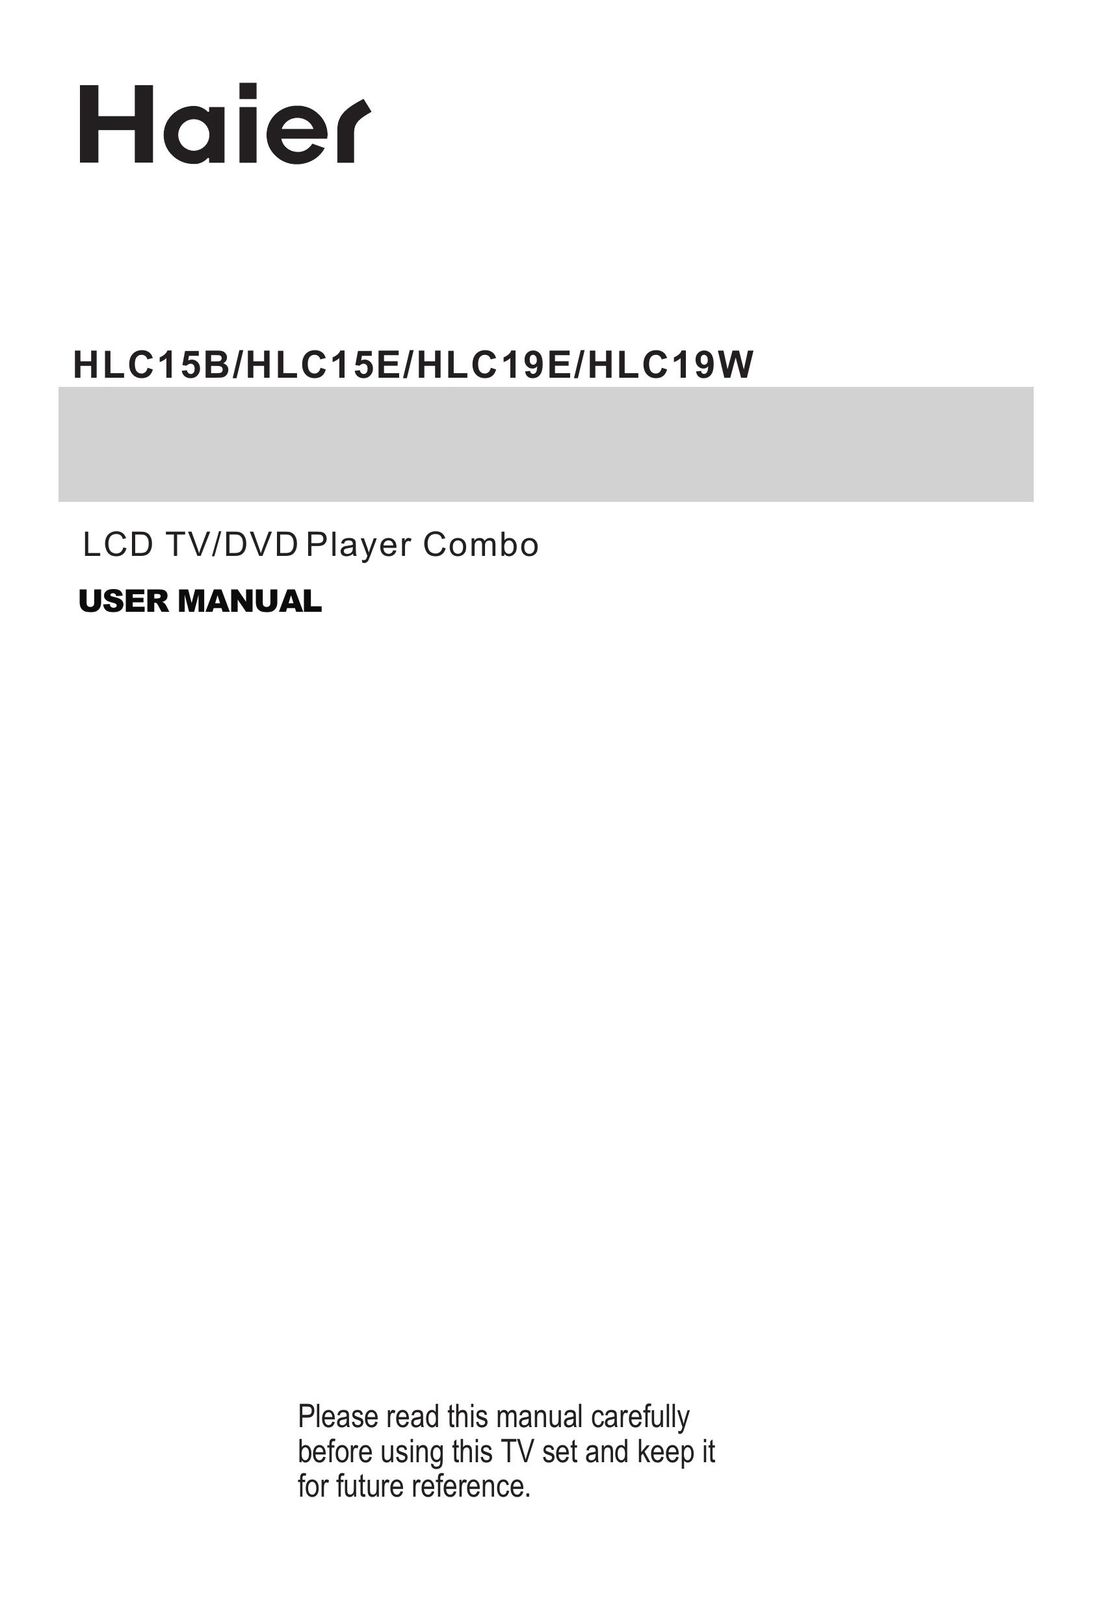 Haier HLC19W TV DVD Combo User Manual